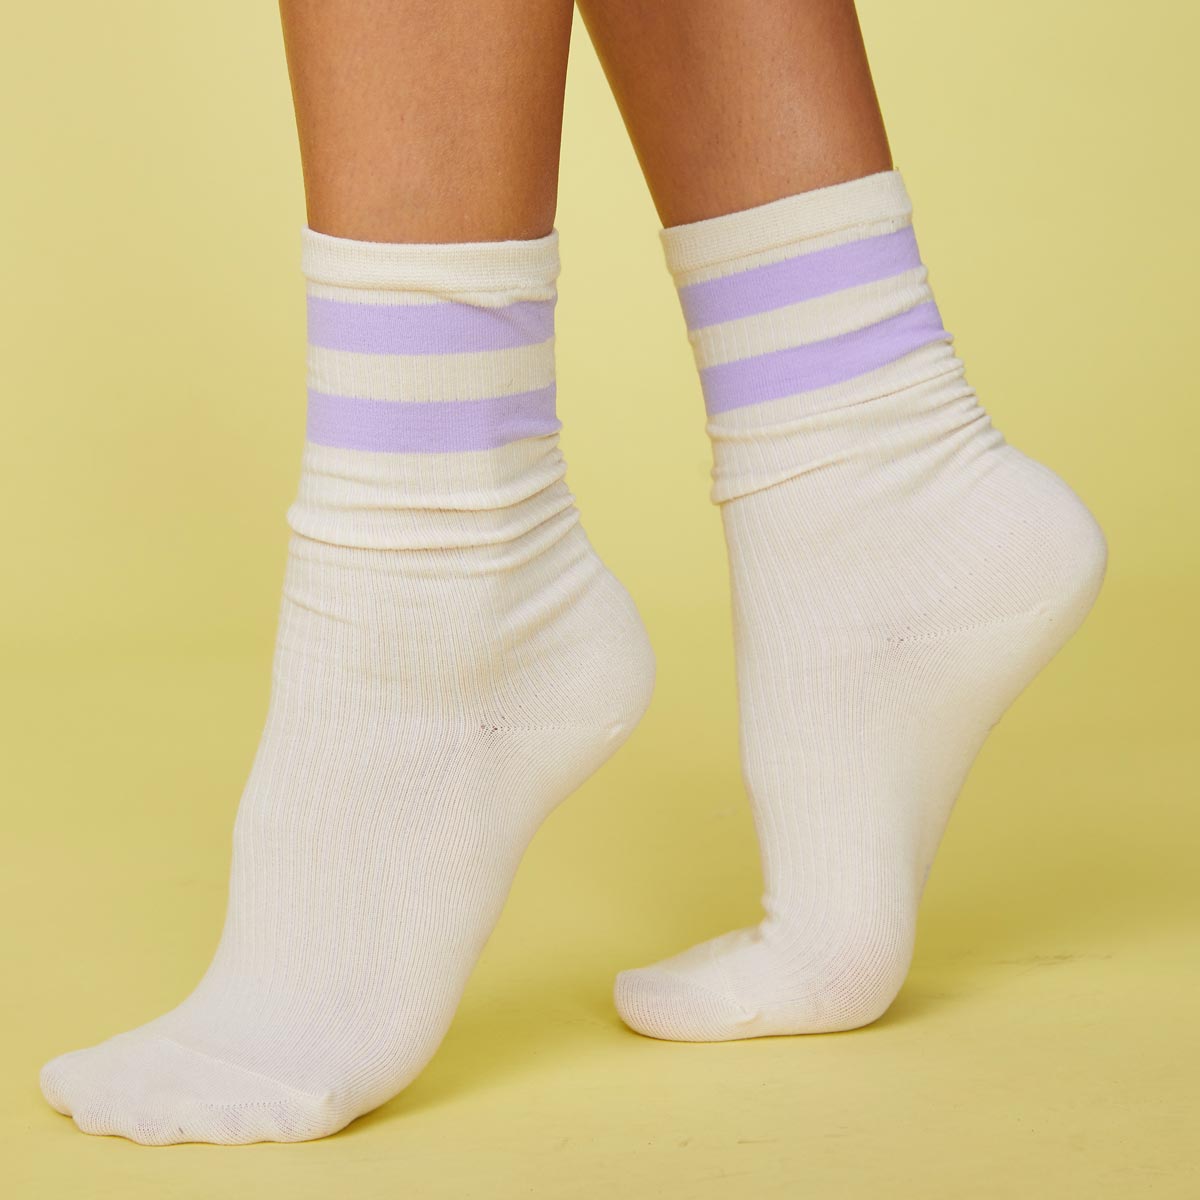 Side view of model's feet wearing the stripe socks in wisteria.